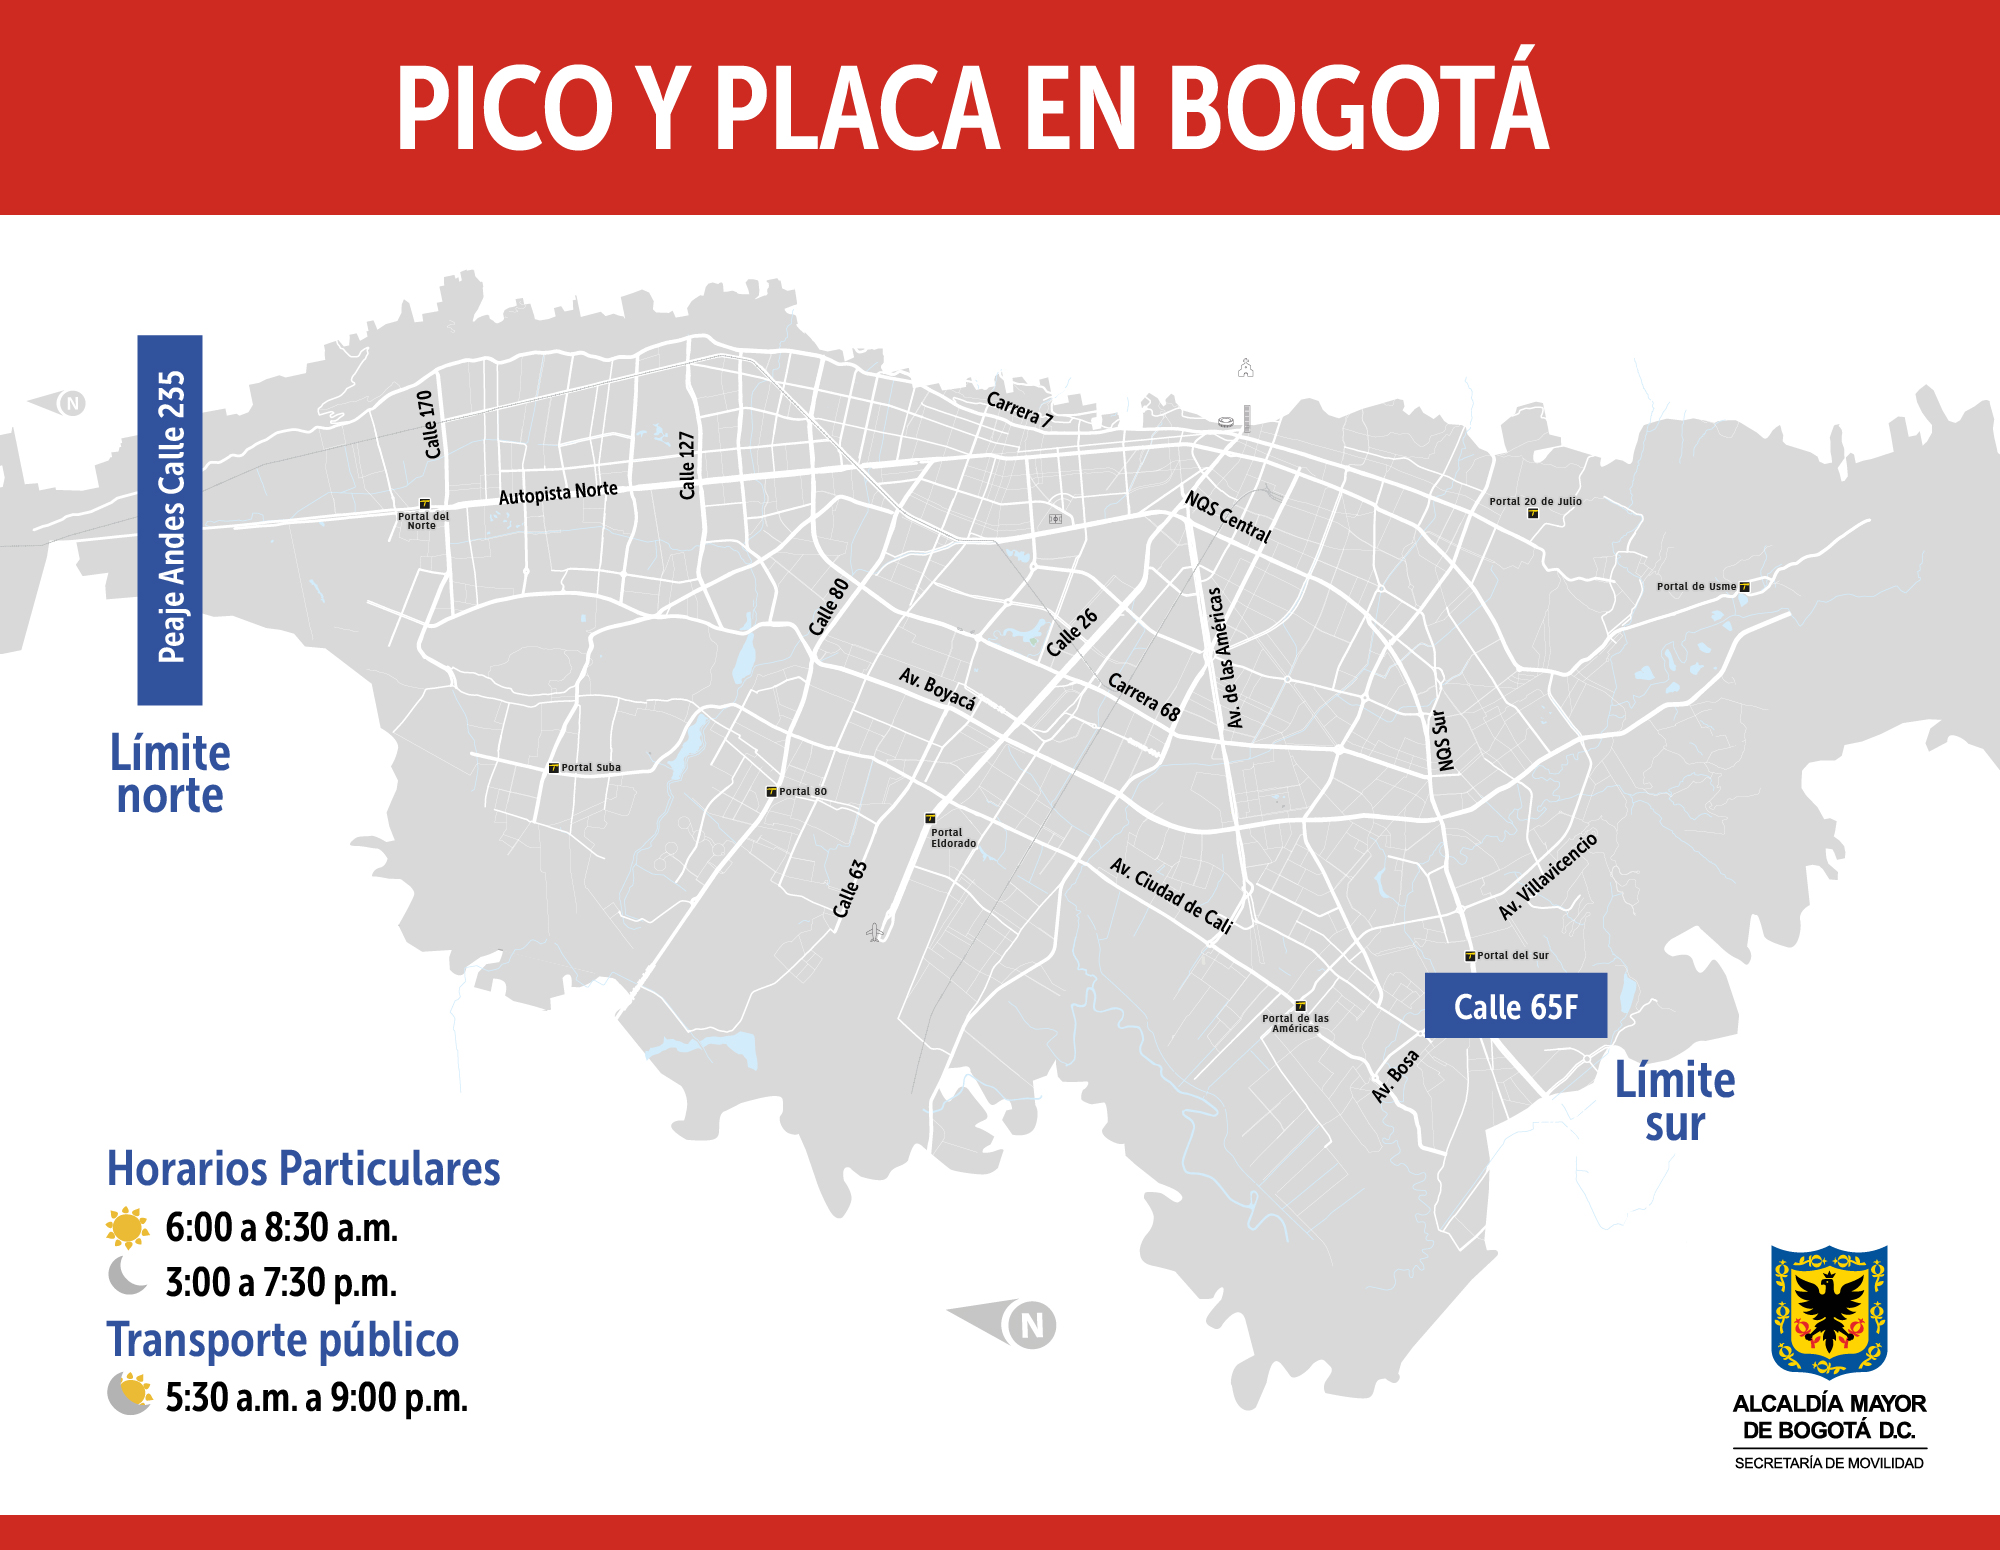 Pico y placa en Bogotá para el jueves 13 de febrero